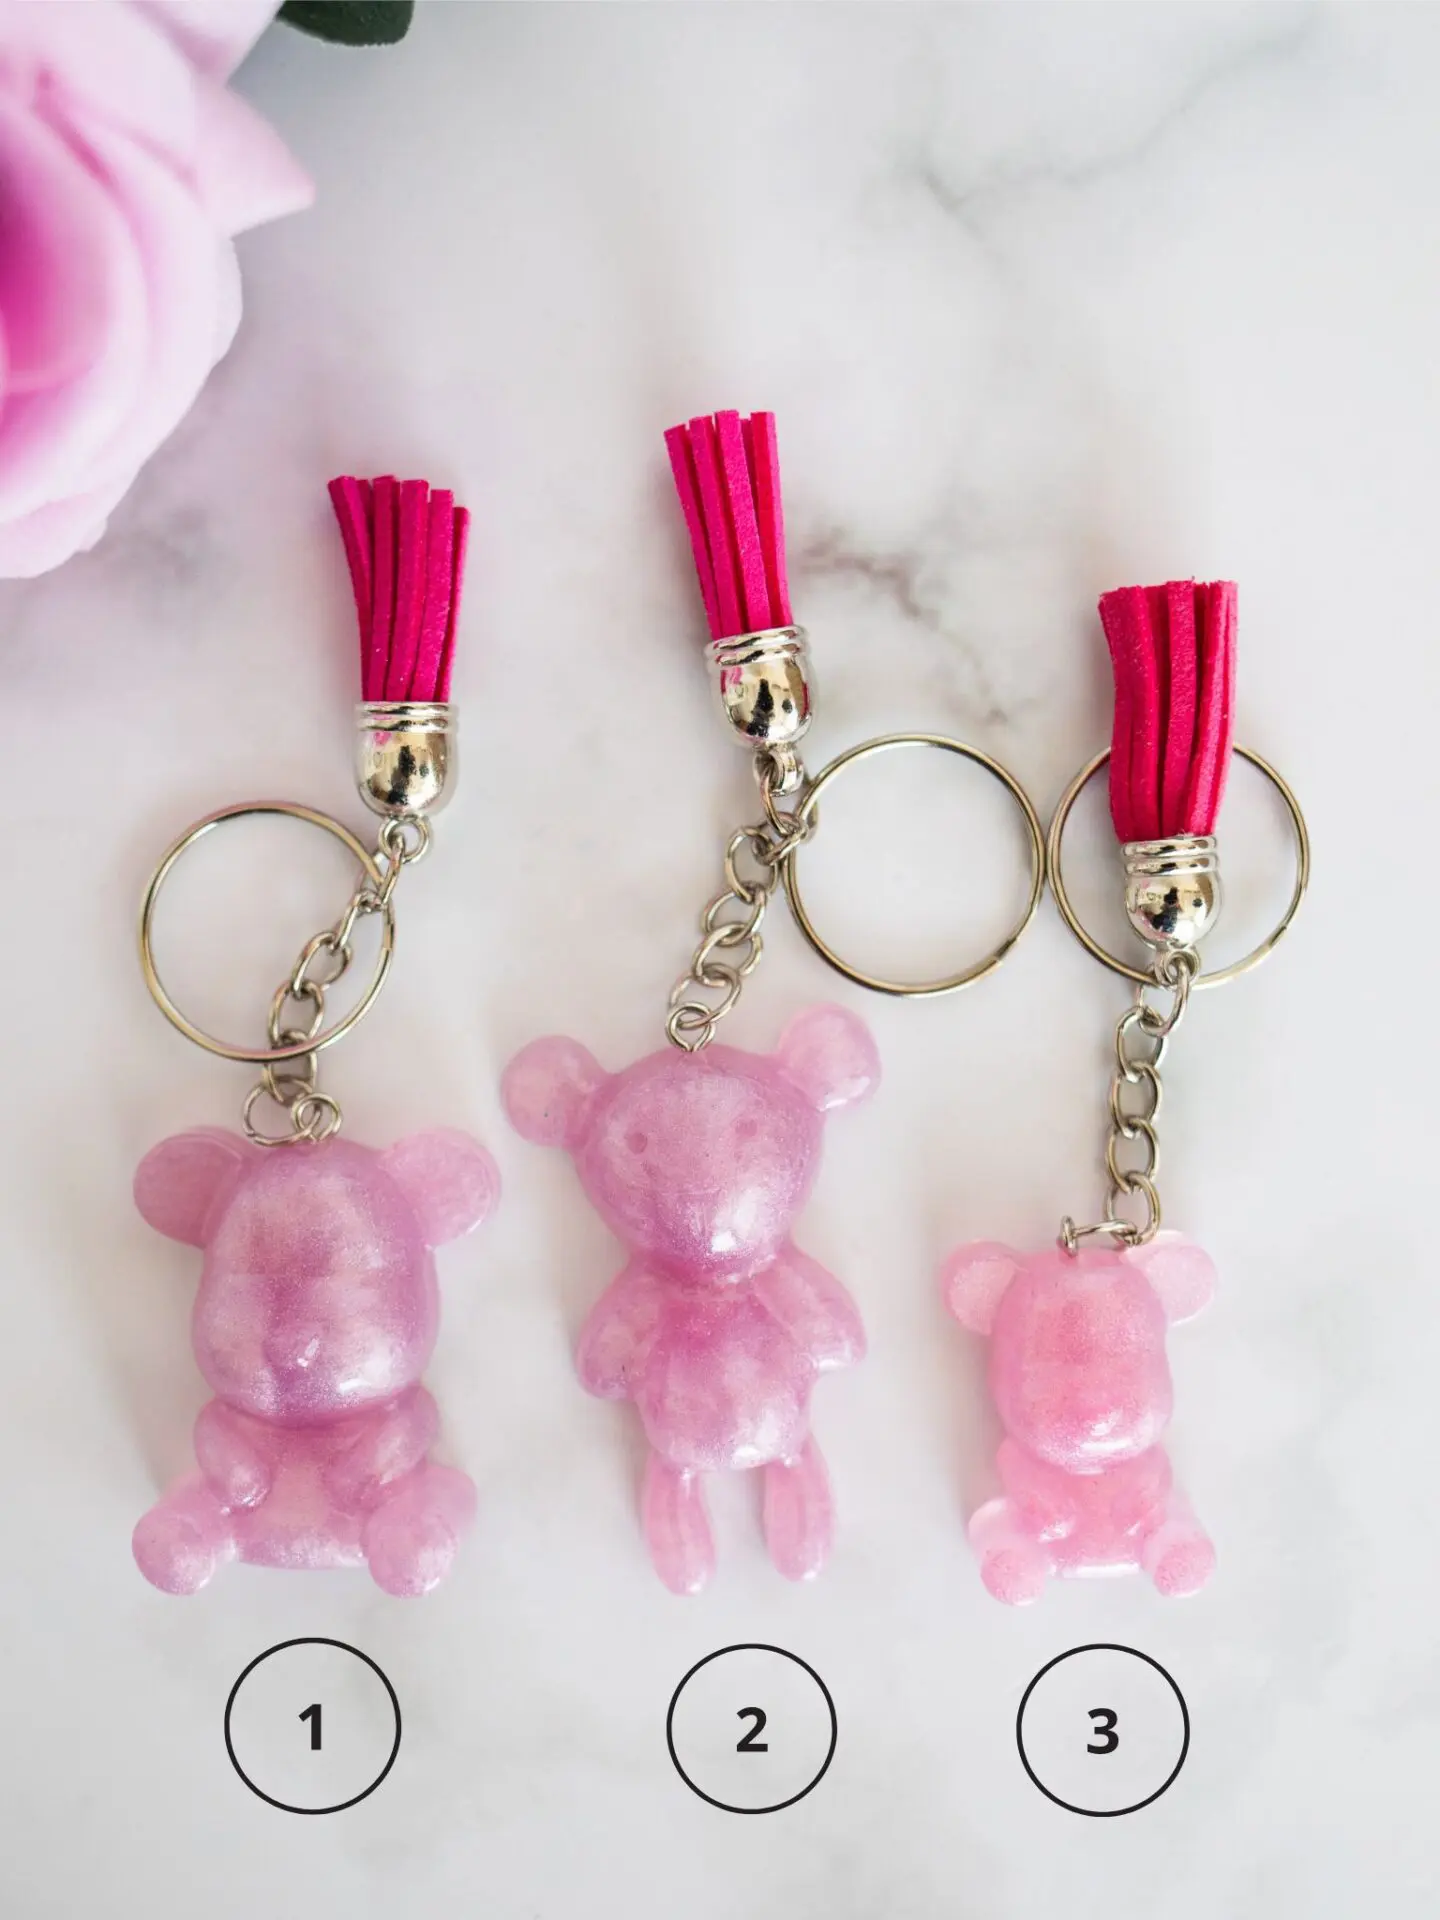 Porte clé résine ourson rose - idées cadeaux - boutique en ligne - Ourson rouges foncés - boutique idées cadeaux - boutique en ligne - création française et artisanale.